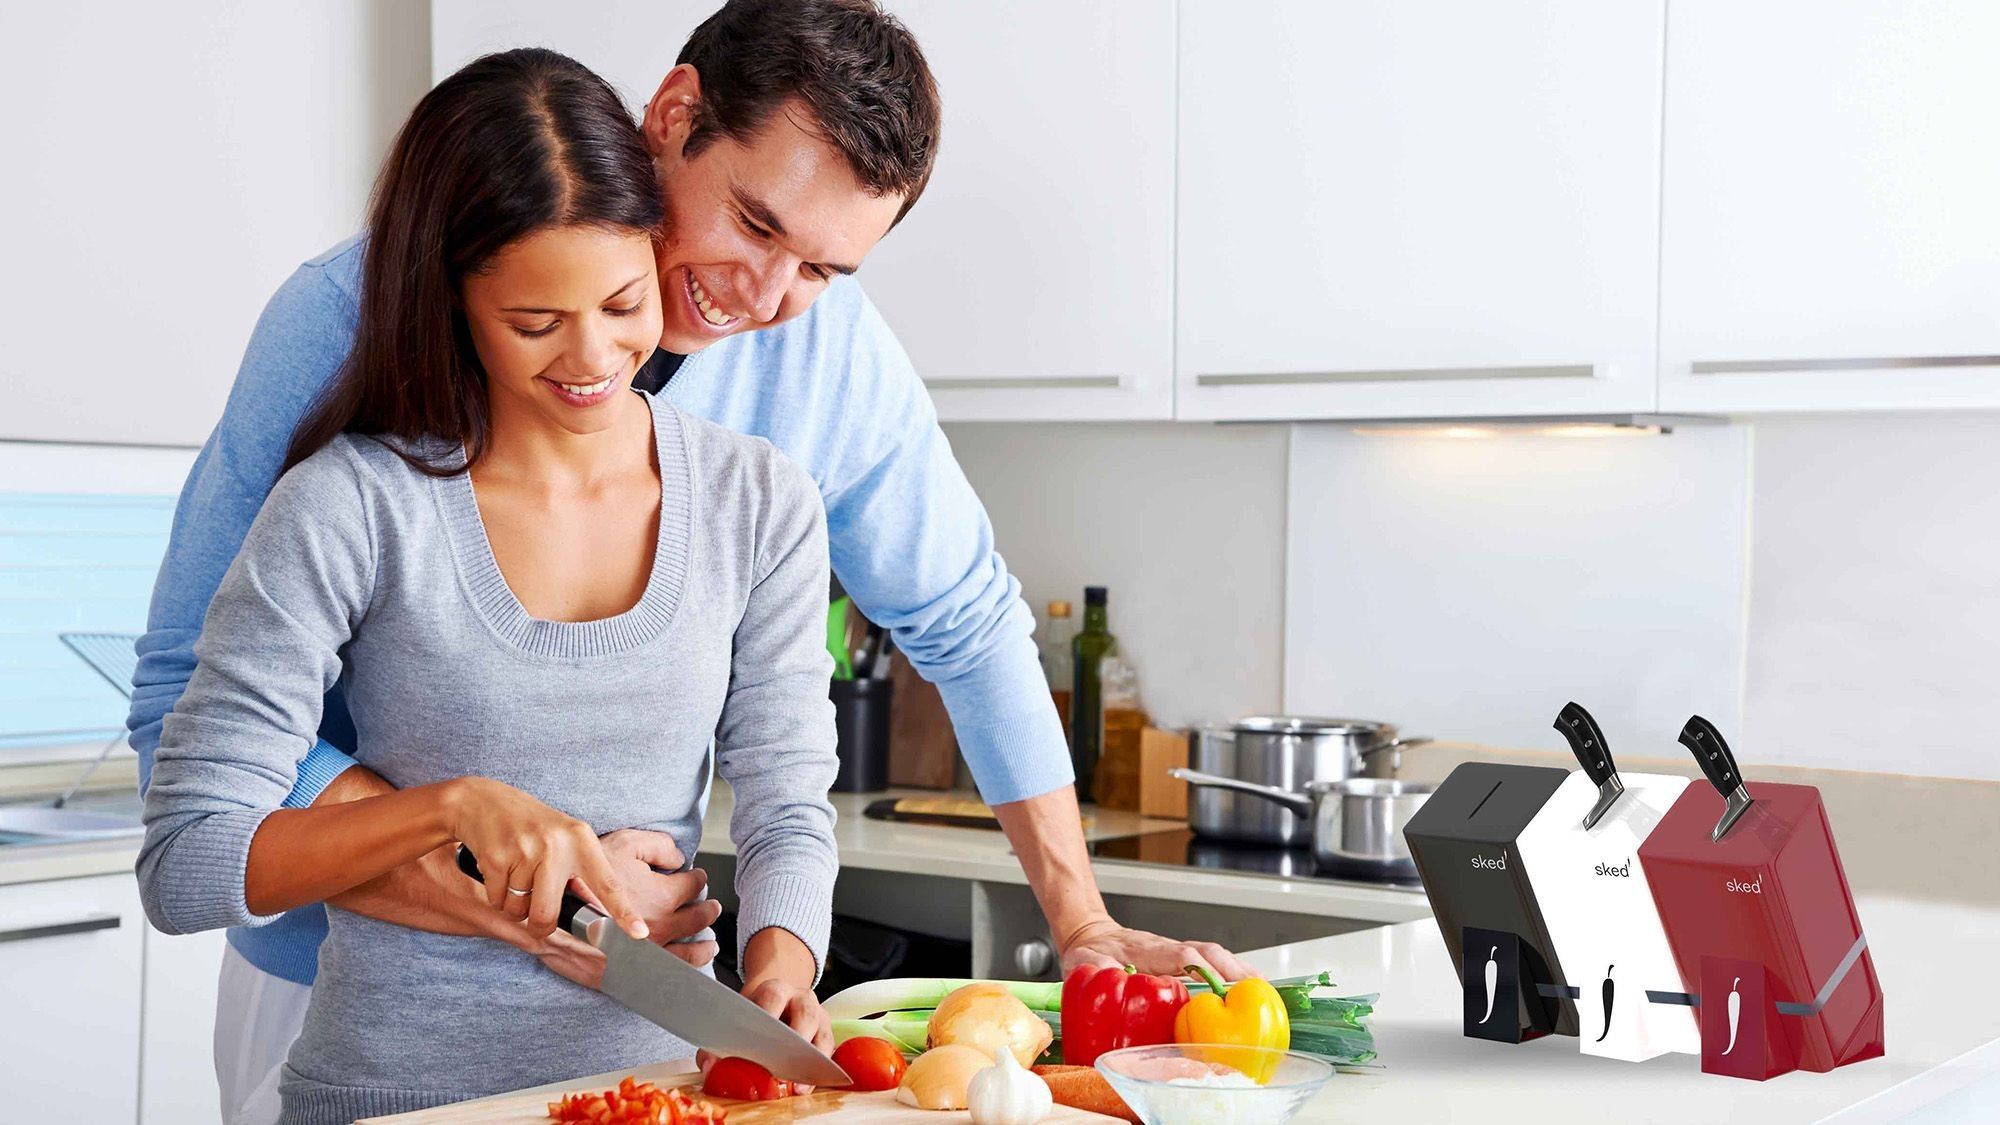 Mann und Frau schneiden gemeinsam Gemüse mit dem Sked Messer